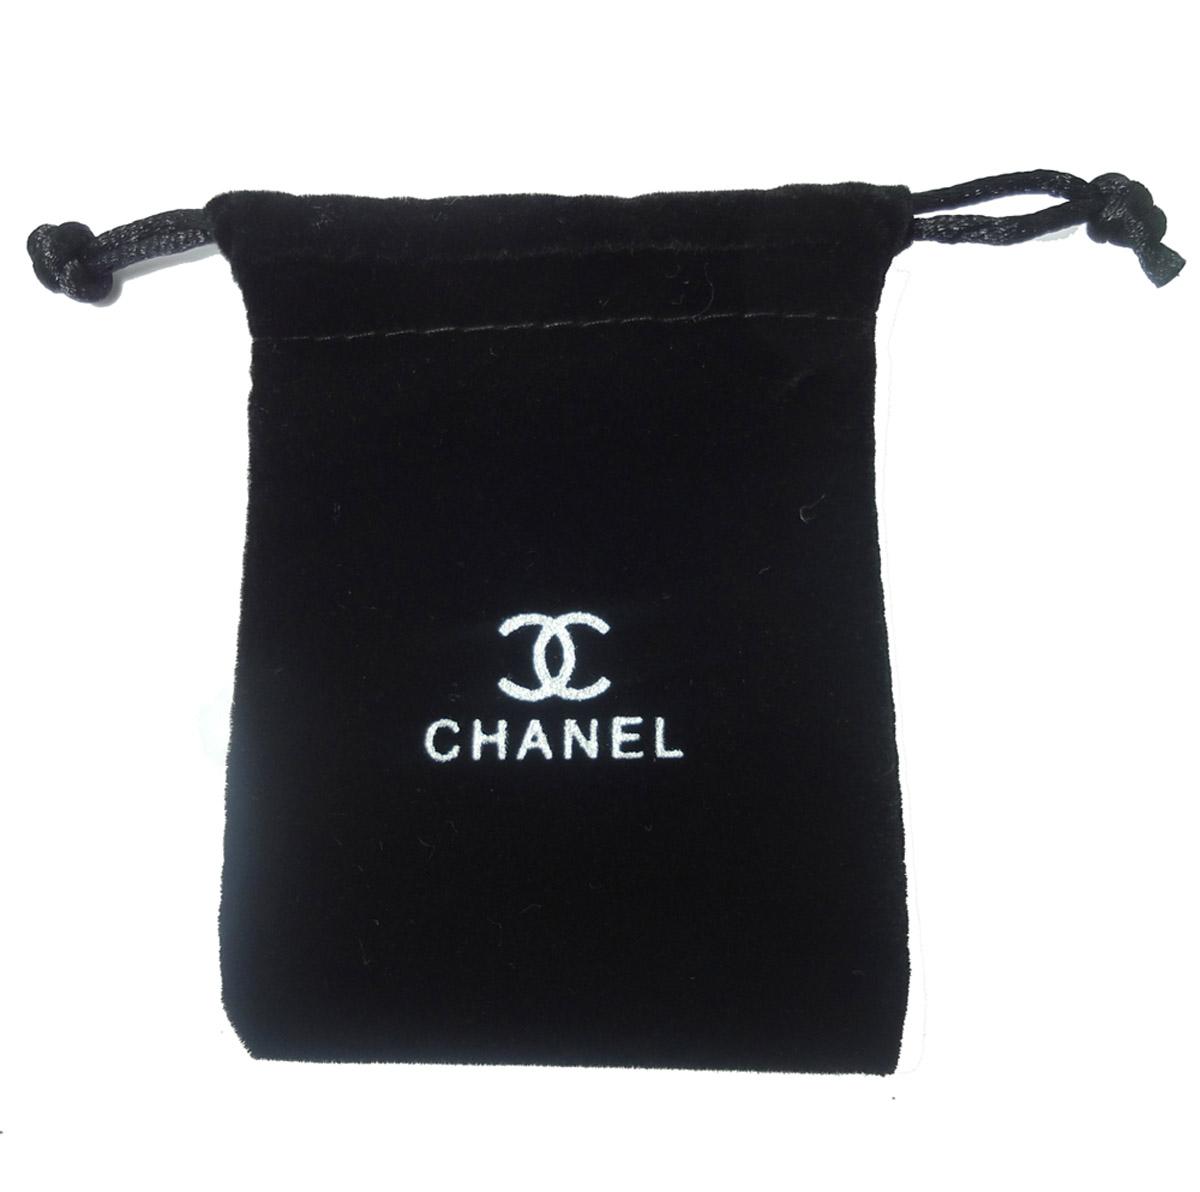 Velvet bags with Logos